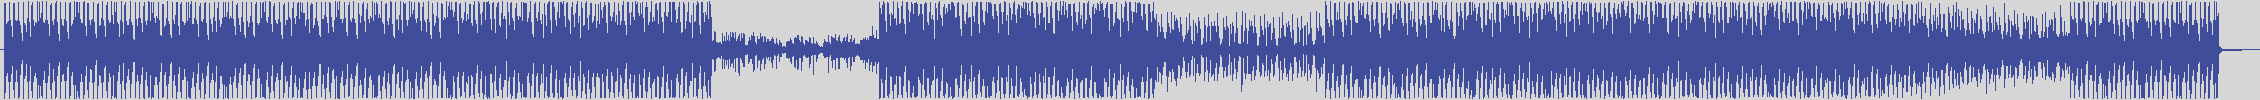 noclouds_chillout [NOC038] Dj Jerry - Drop Frame [Original Mix] audio wave form